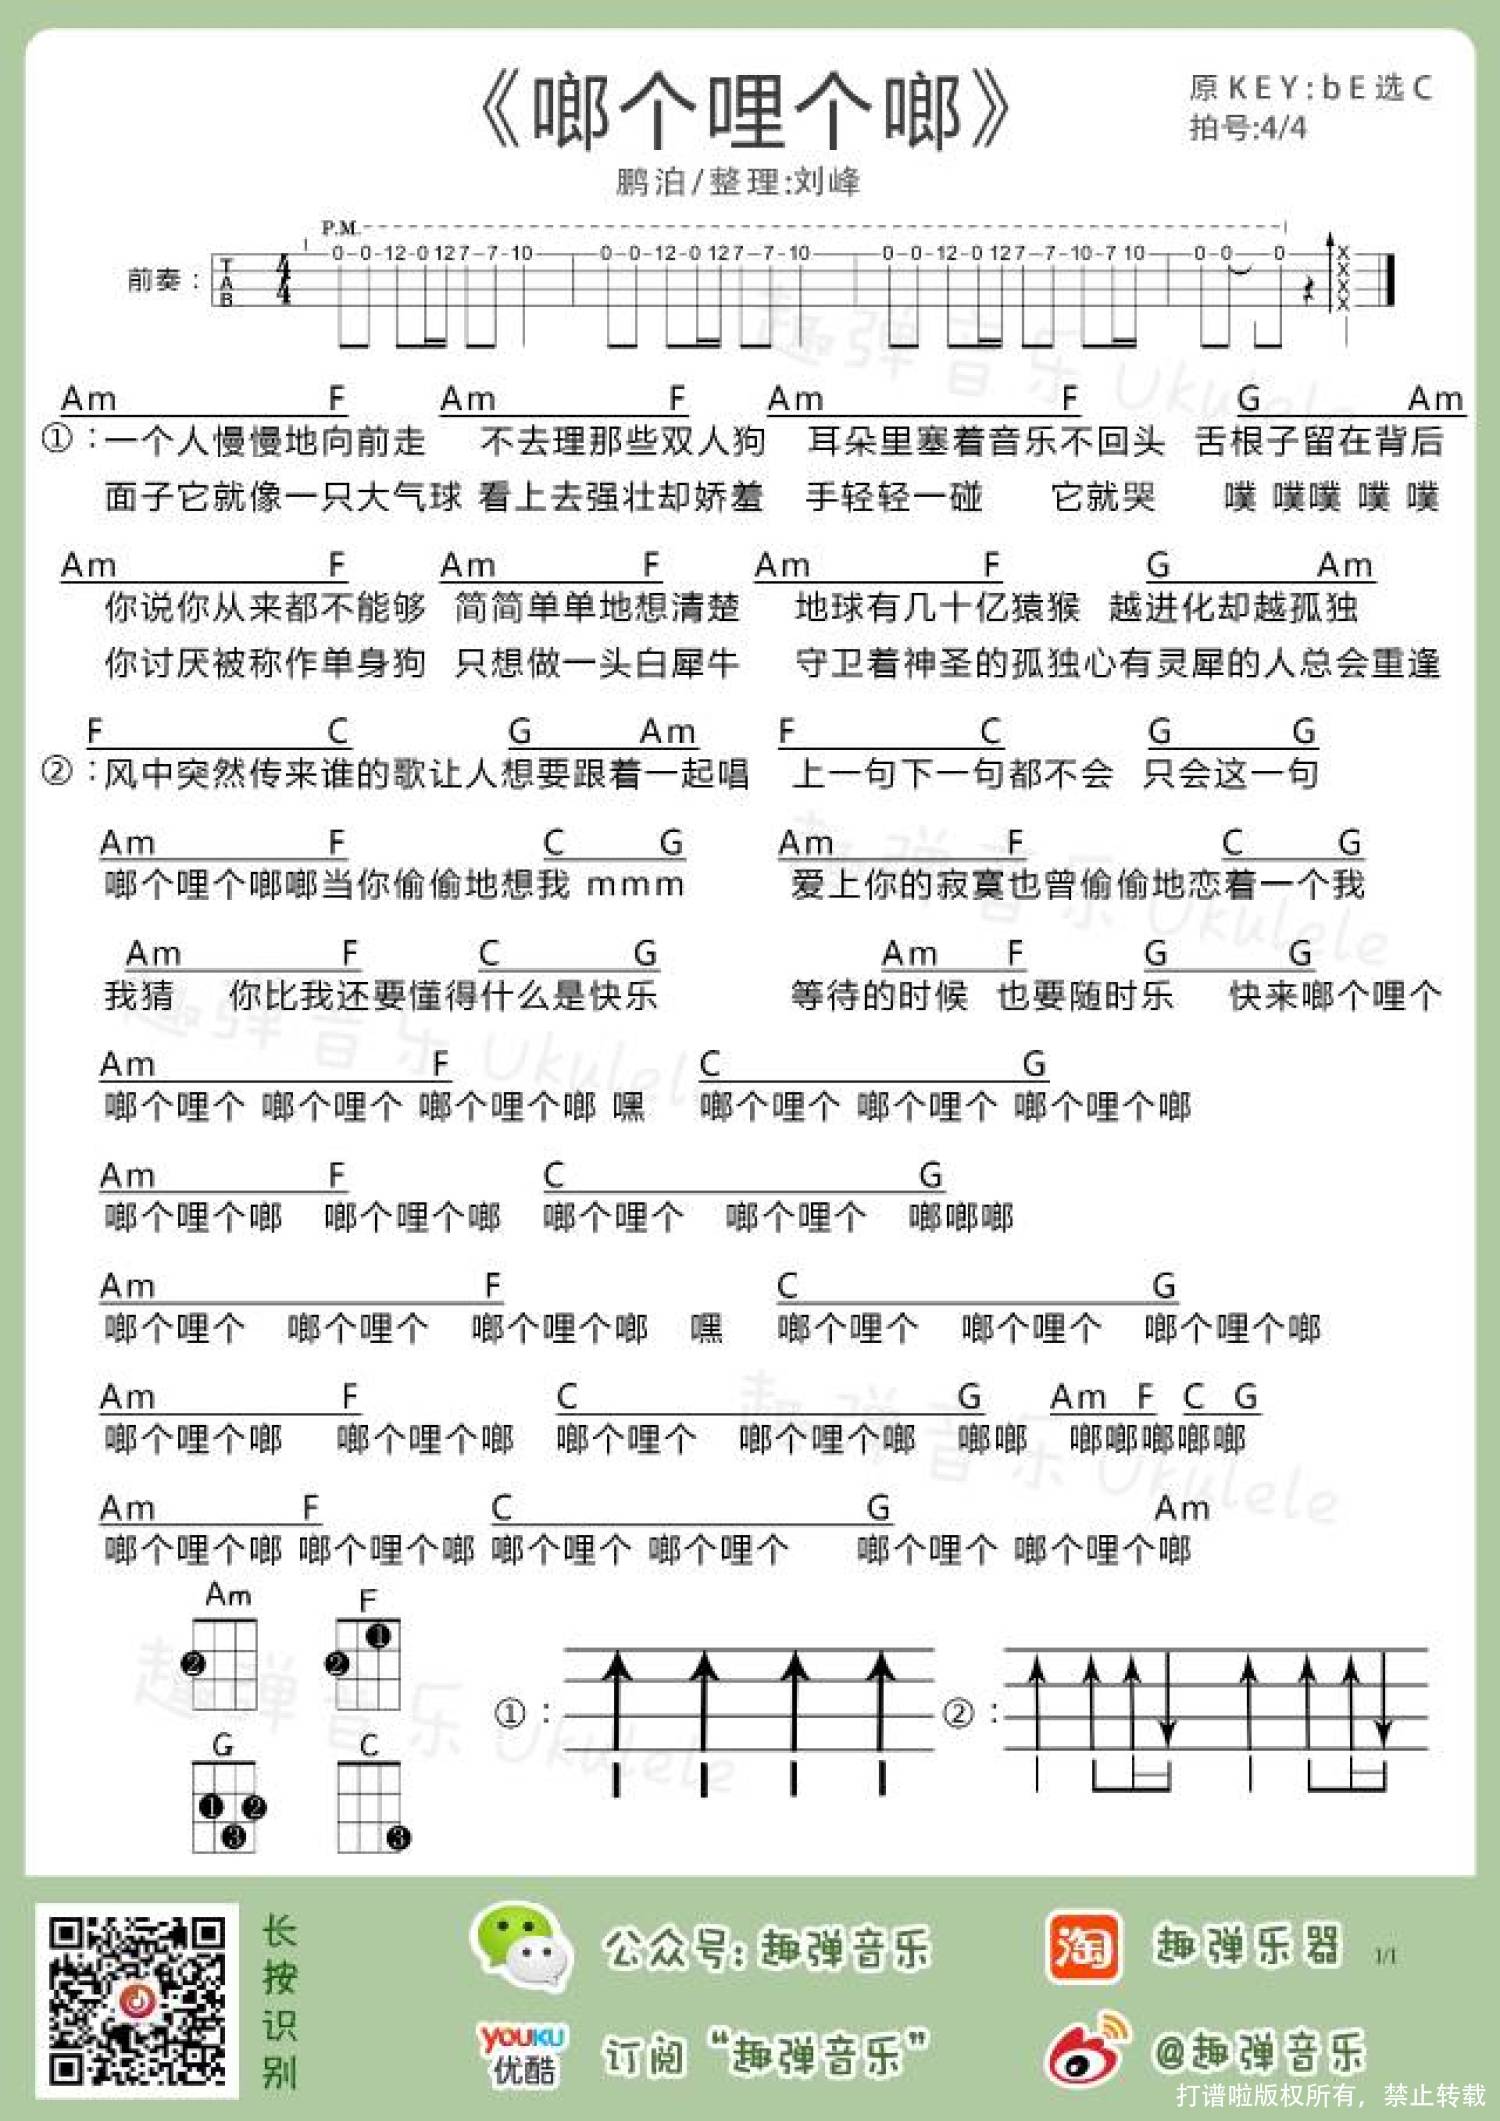 啷个哩个啷-鹏泊双手简谱预览2-钢琴谱文件（五线谱、双手简谱、数字谱、Midi、PDF）免费下载